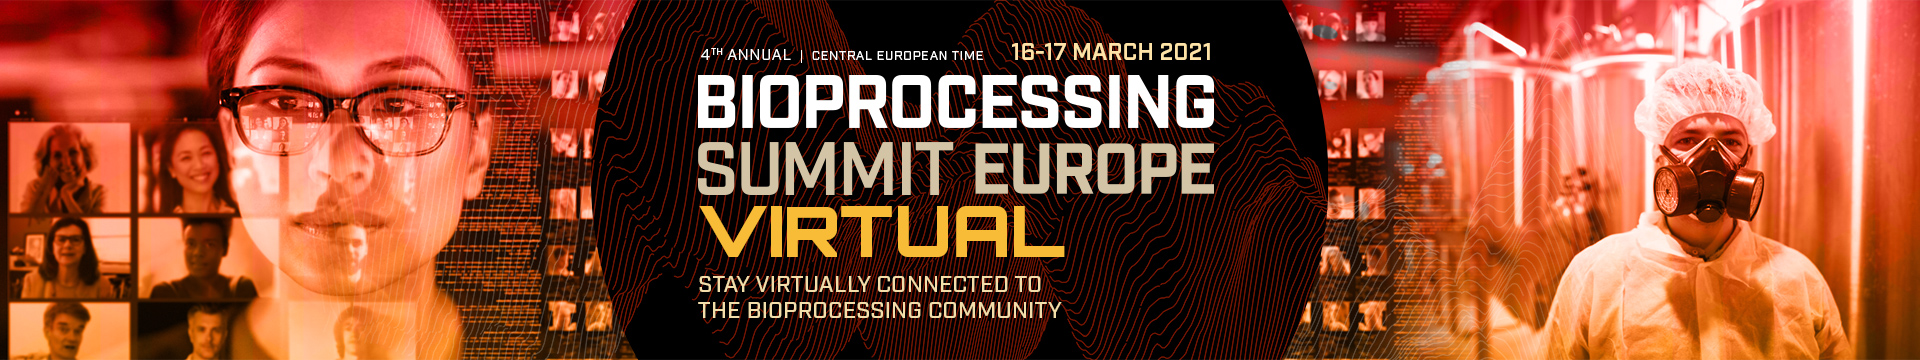 Bioprocessing Summit Europe Virtual Banner Image